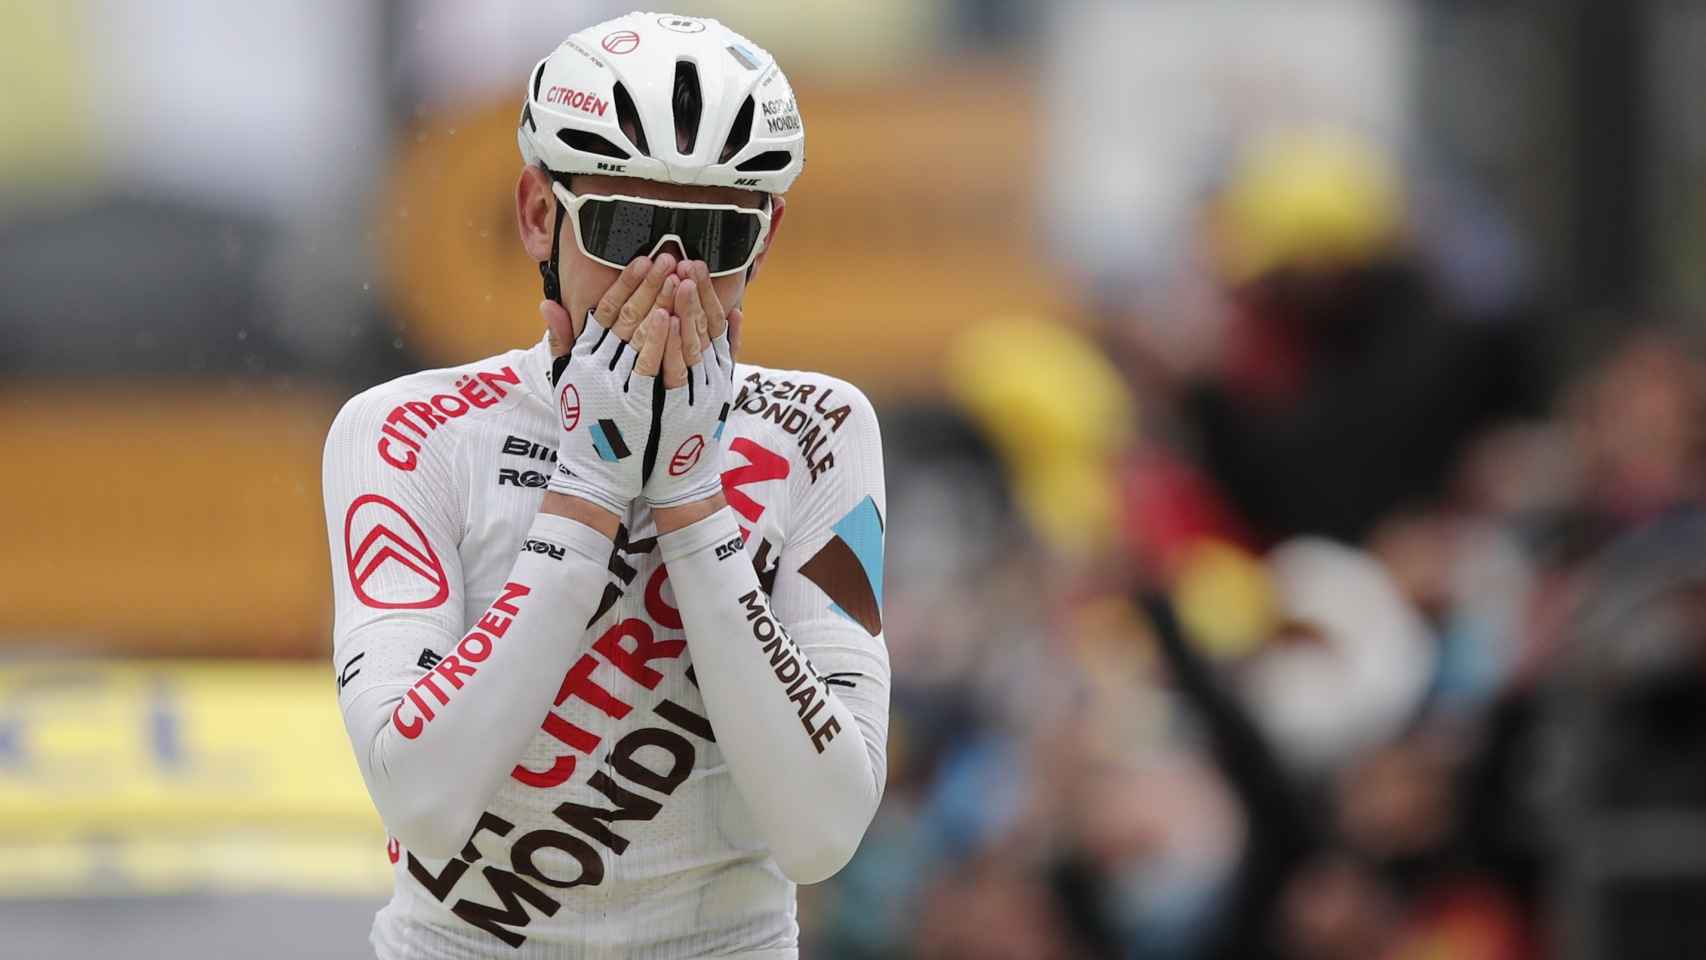 Ben O'connor, celebrando su victoria en la novena etapa del Tour de Francia